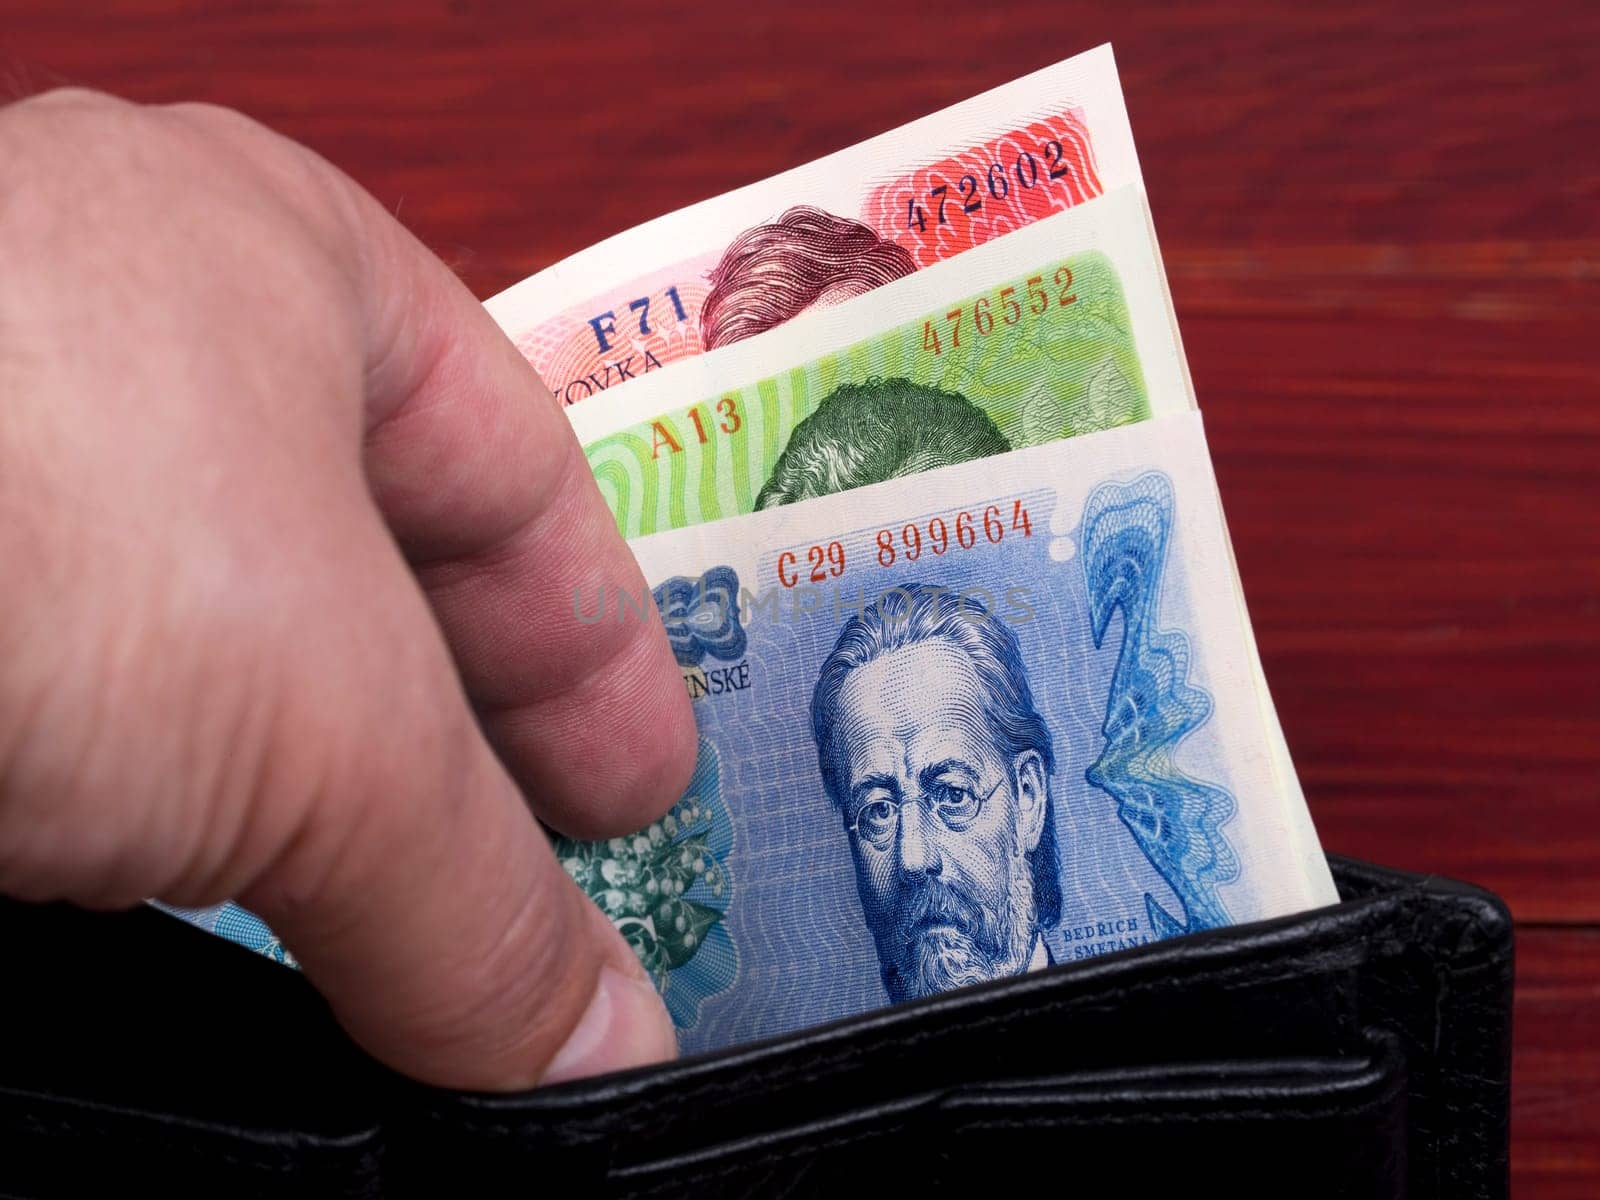 Czechoslovak koruna in the black wallet by johan10